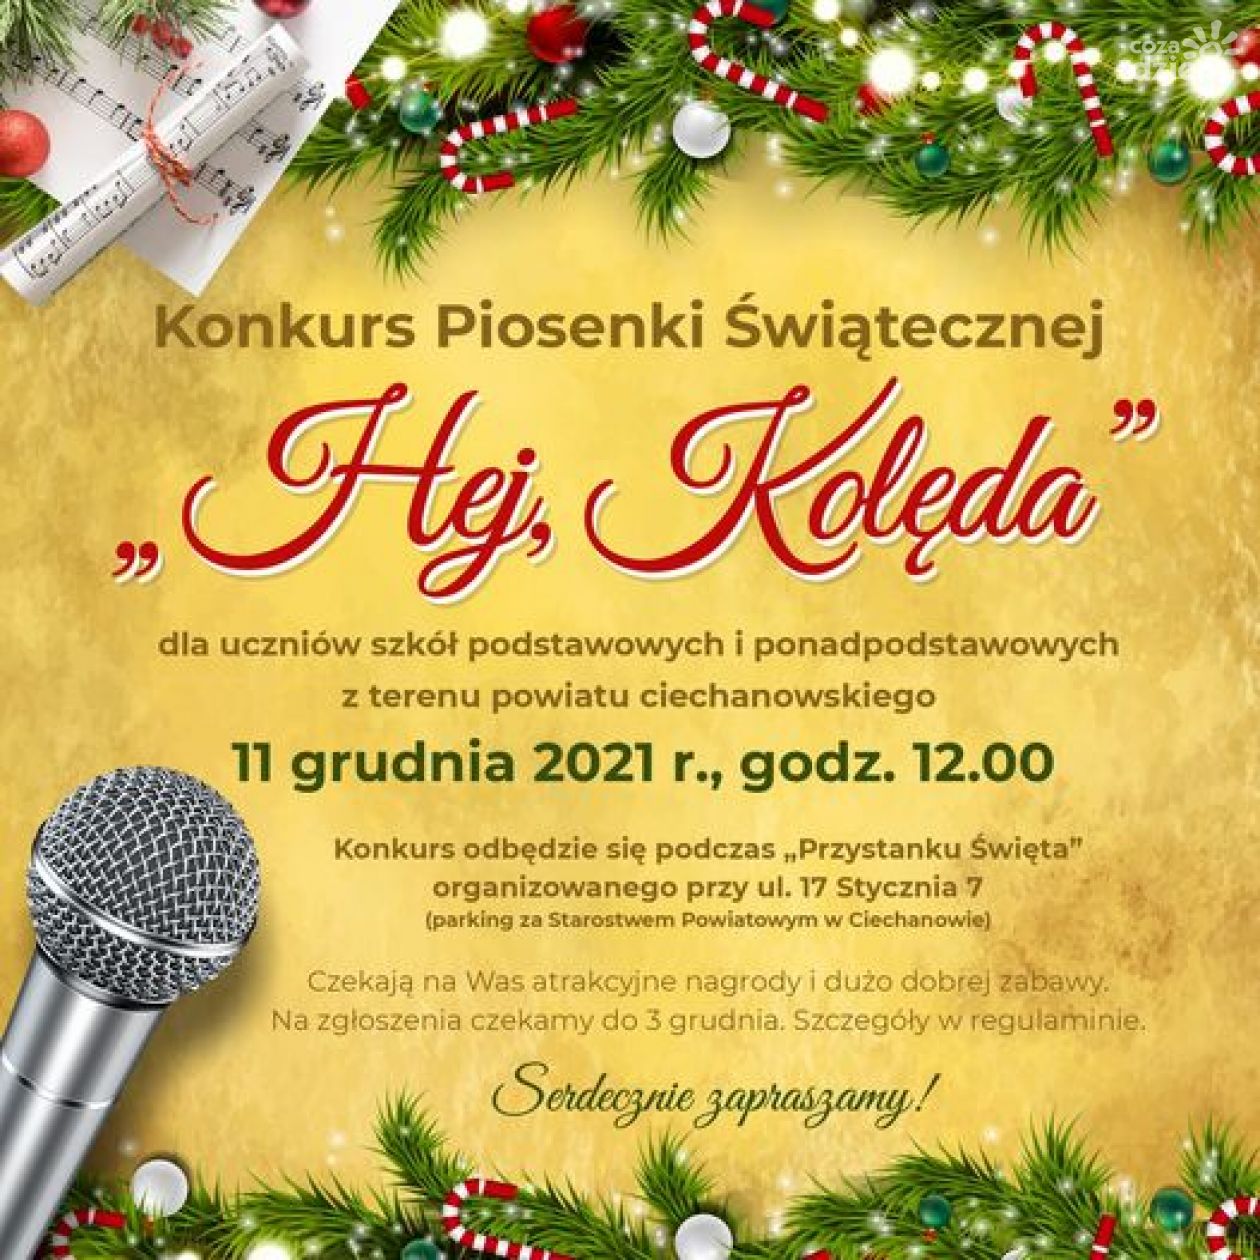 Powiat ciechanowski organizuje Konkurs Piosenki Świątecznej